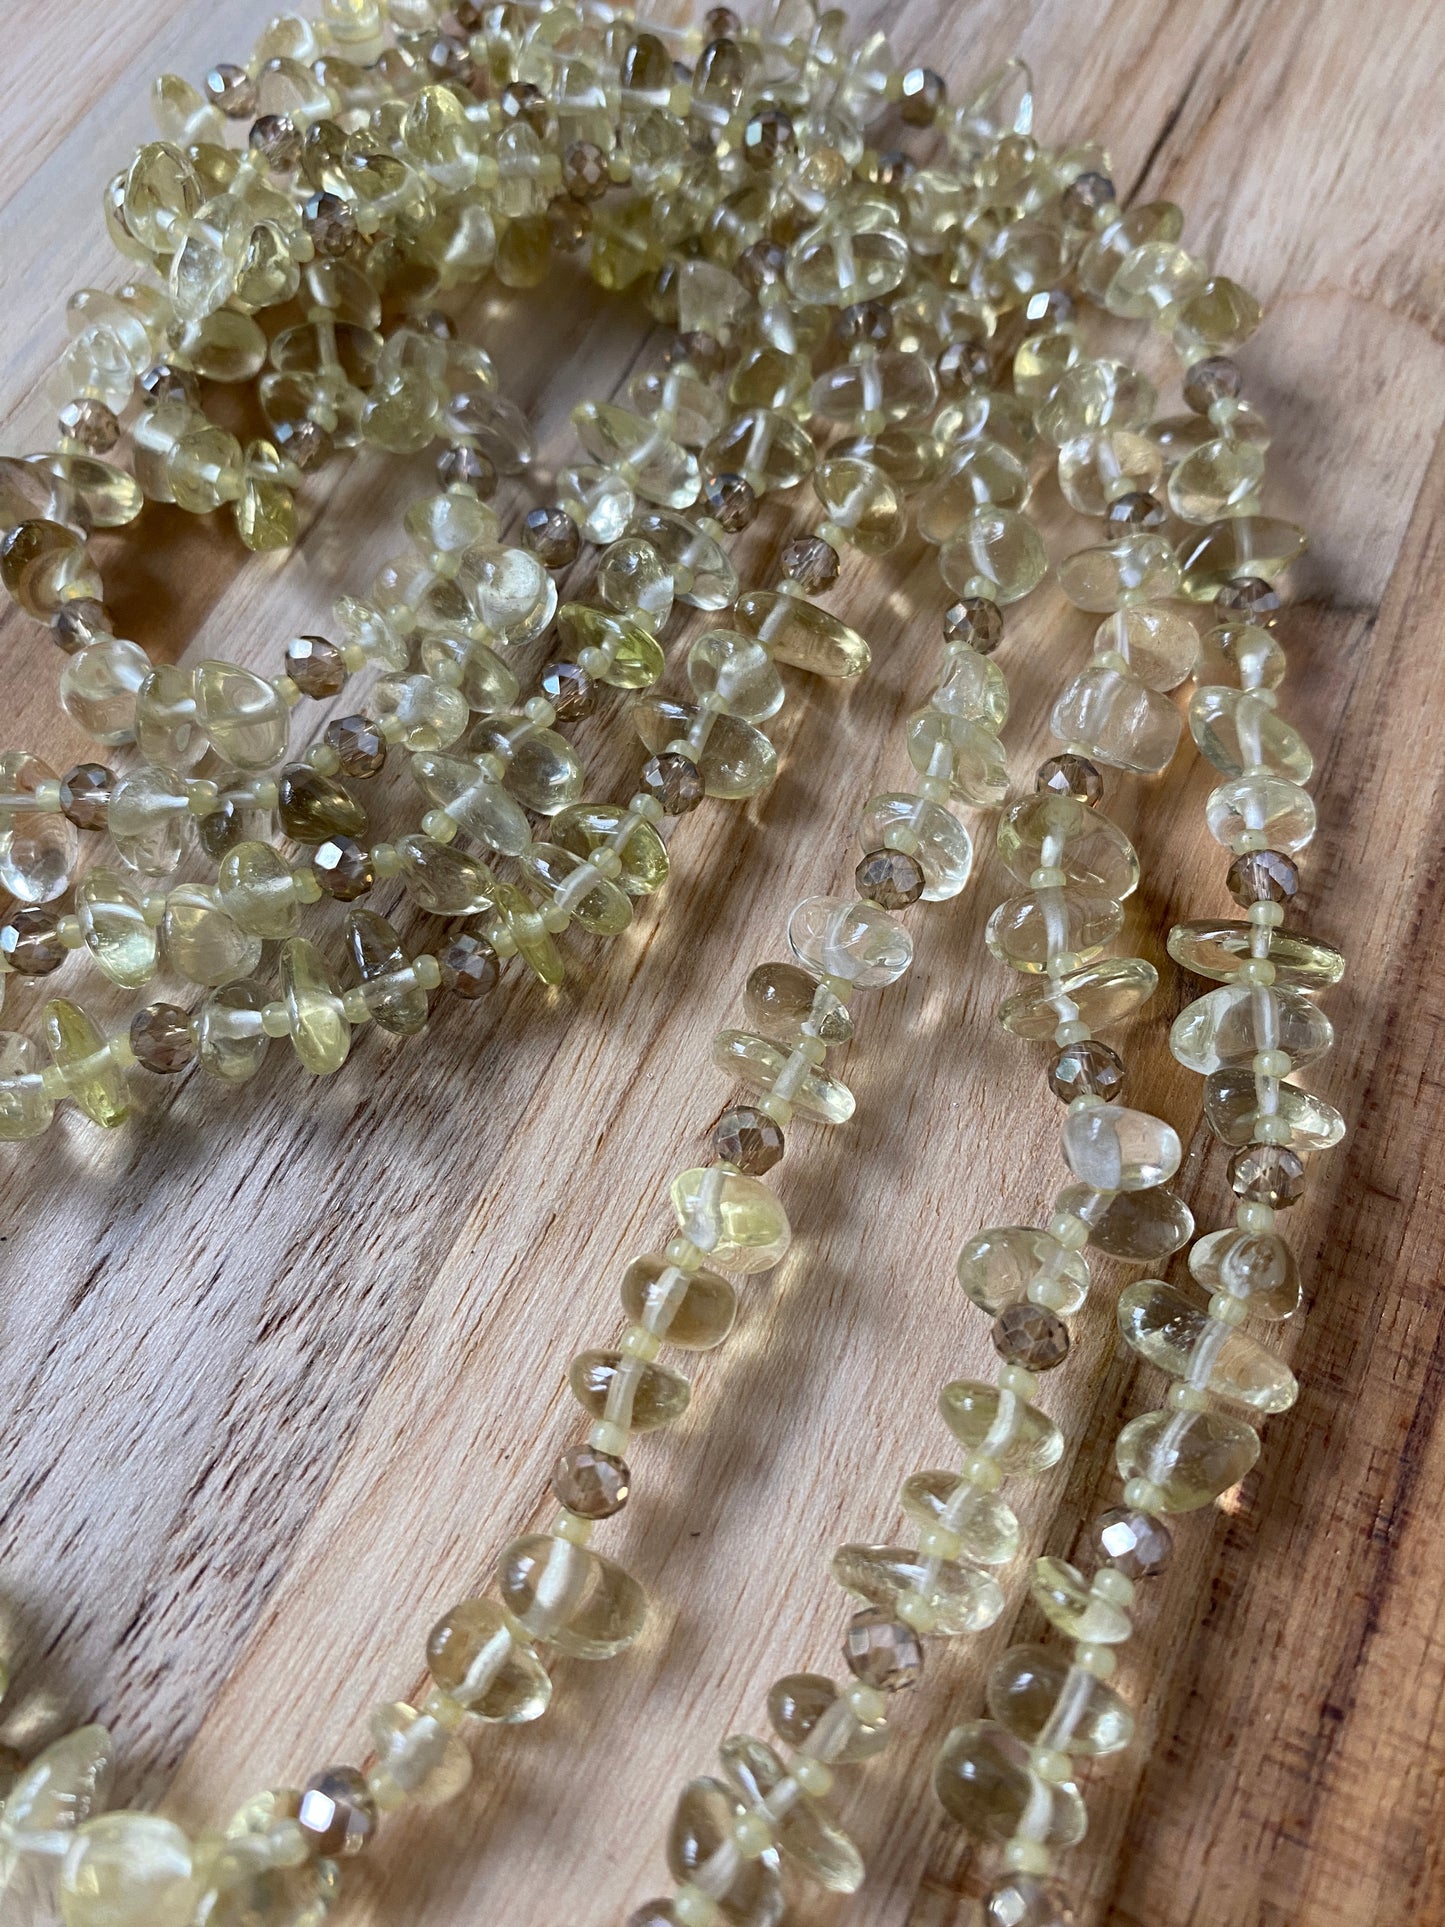 60" Extra Long Wraparound Lemon Quartz Tumble Chip Bead Necklace with Crystal Beads